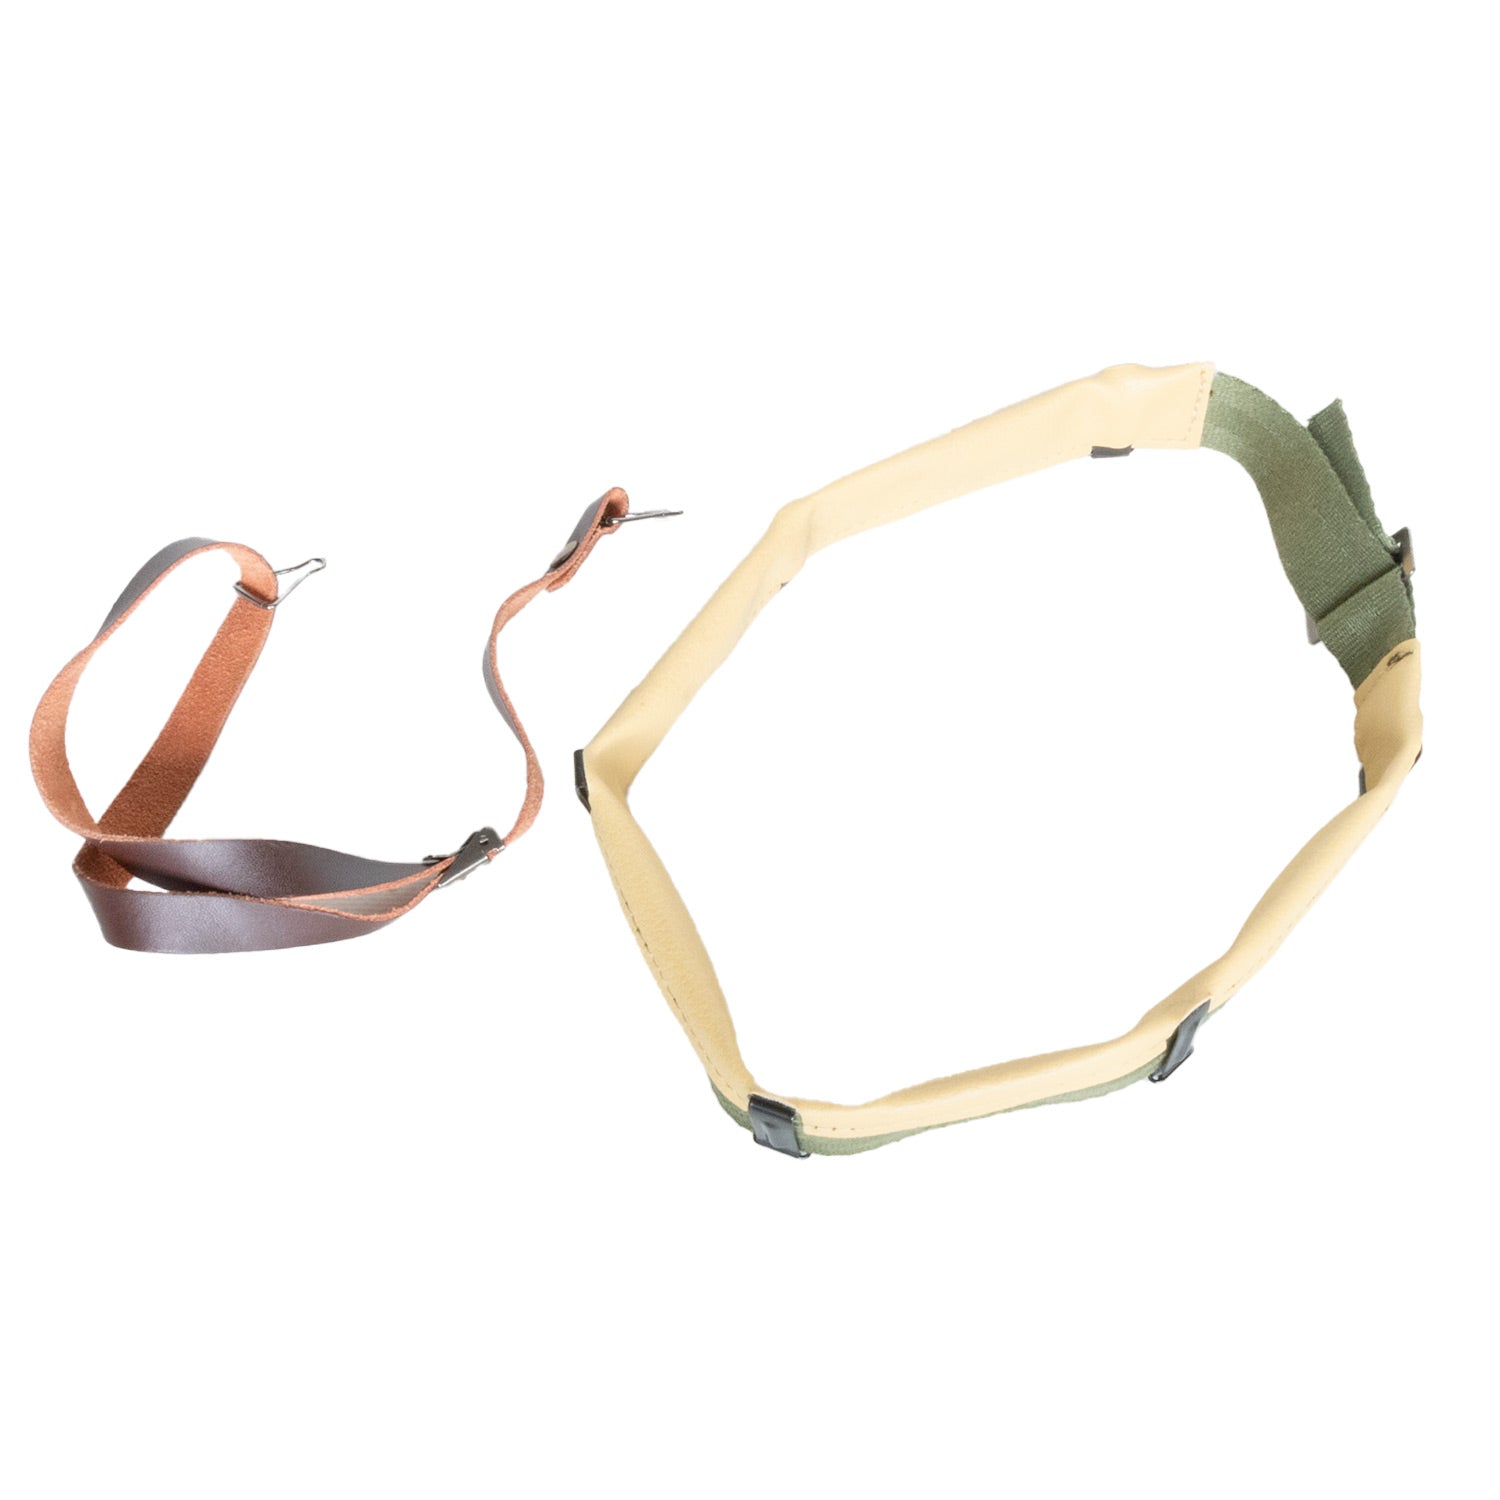 Kit pour liner type US M1 premier prix de headband et jugulaire de liner en kit